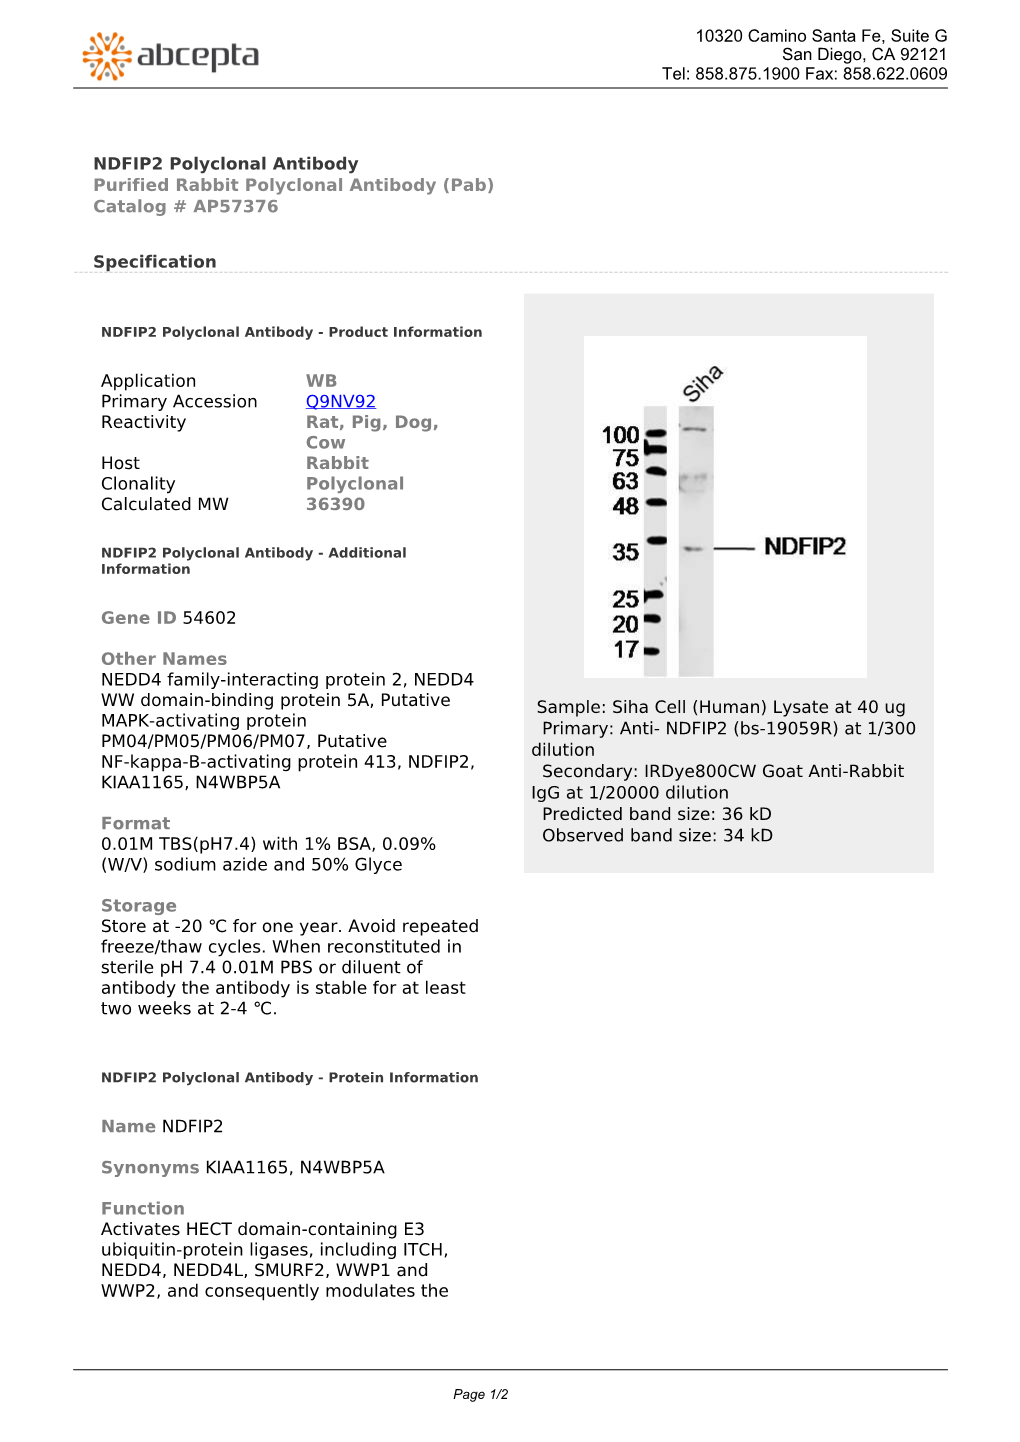 NDFIP2 Polyclonal Antibody Purified Rabbit Polyclonal Antibody (Pab) Catalog # AP57376